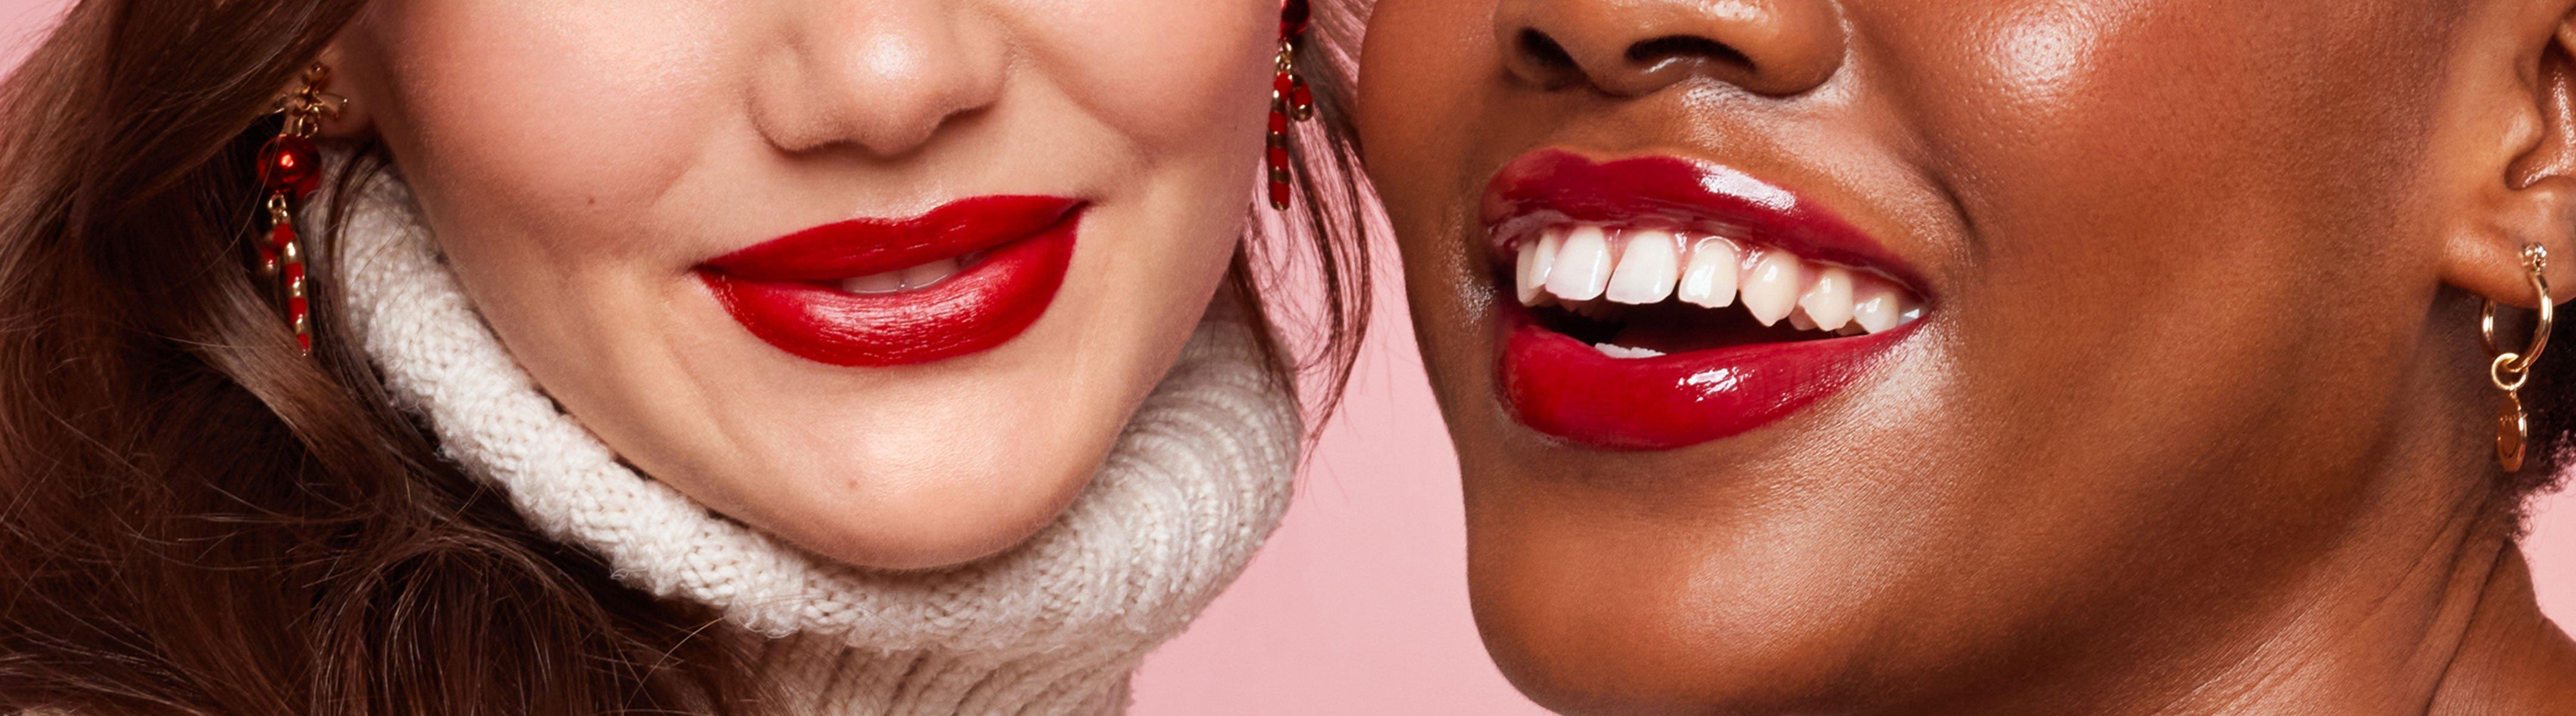 Lippenstift online kaufen ❤️️ essence Shop